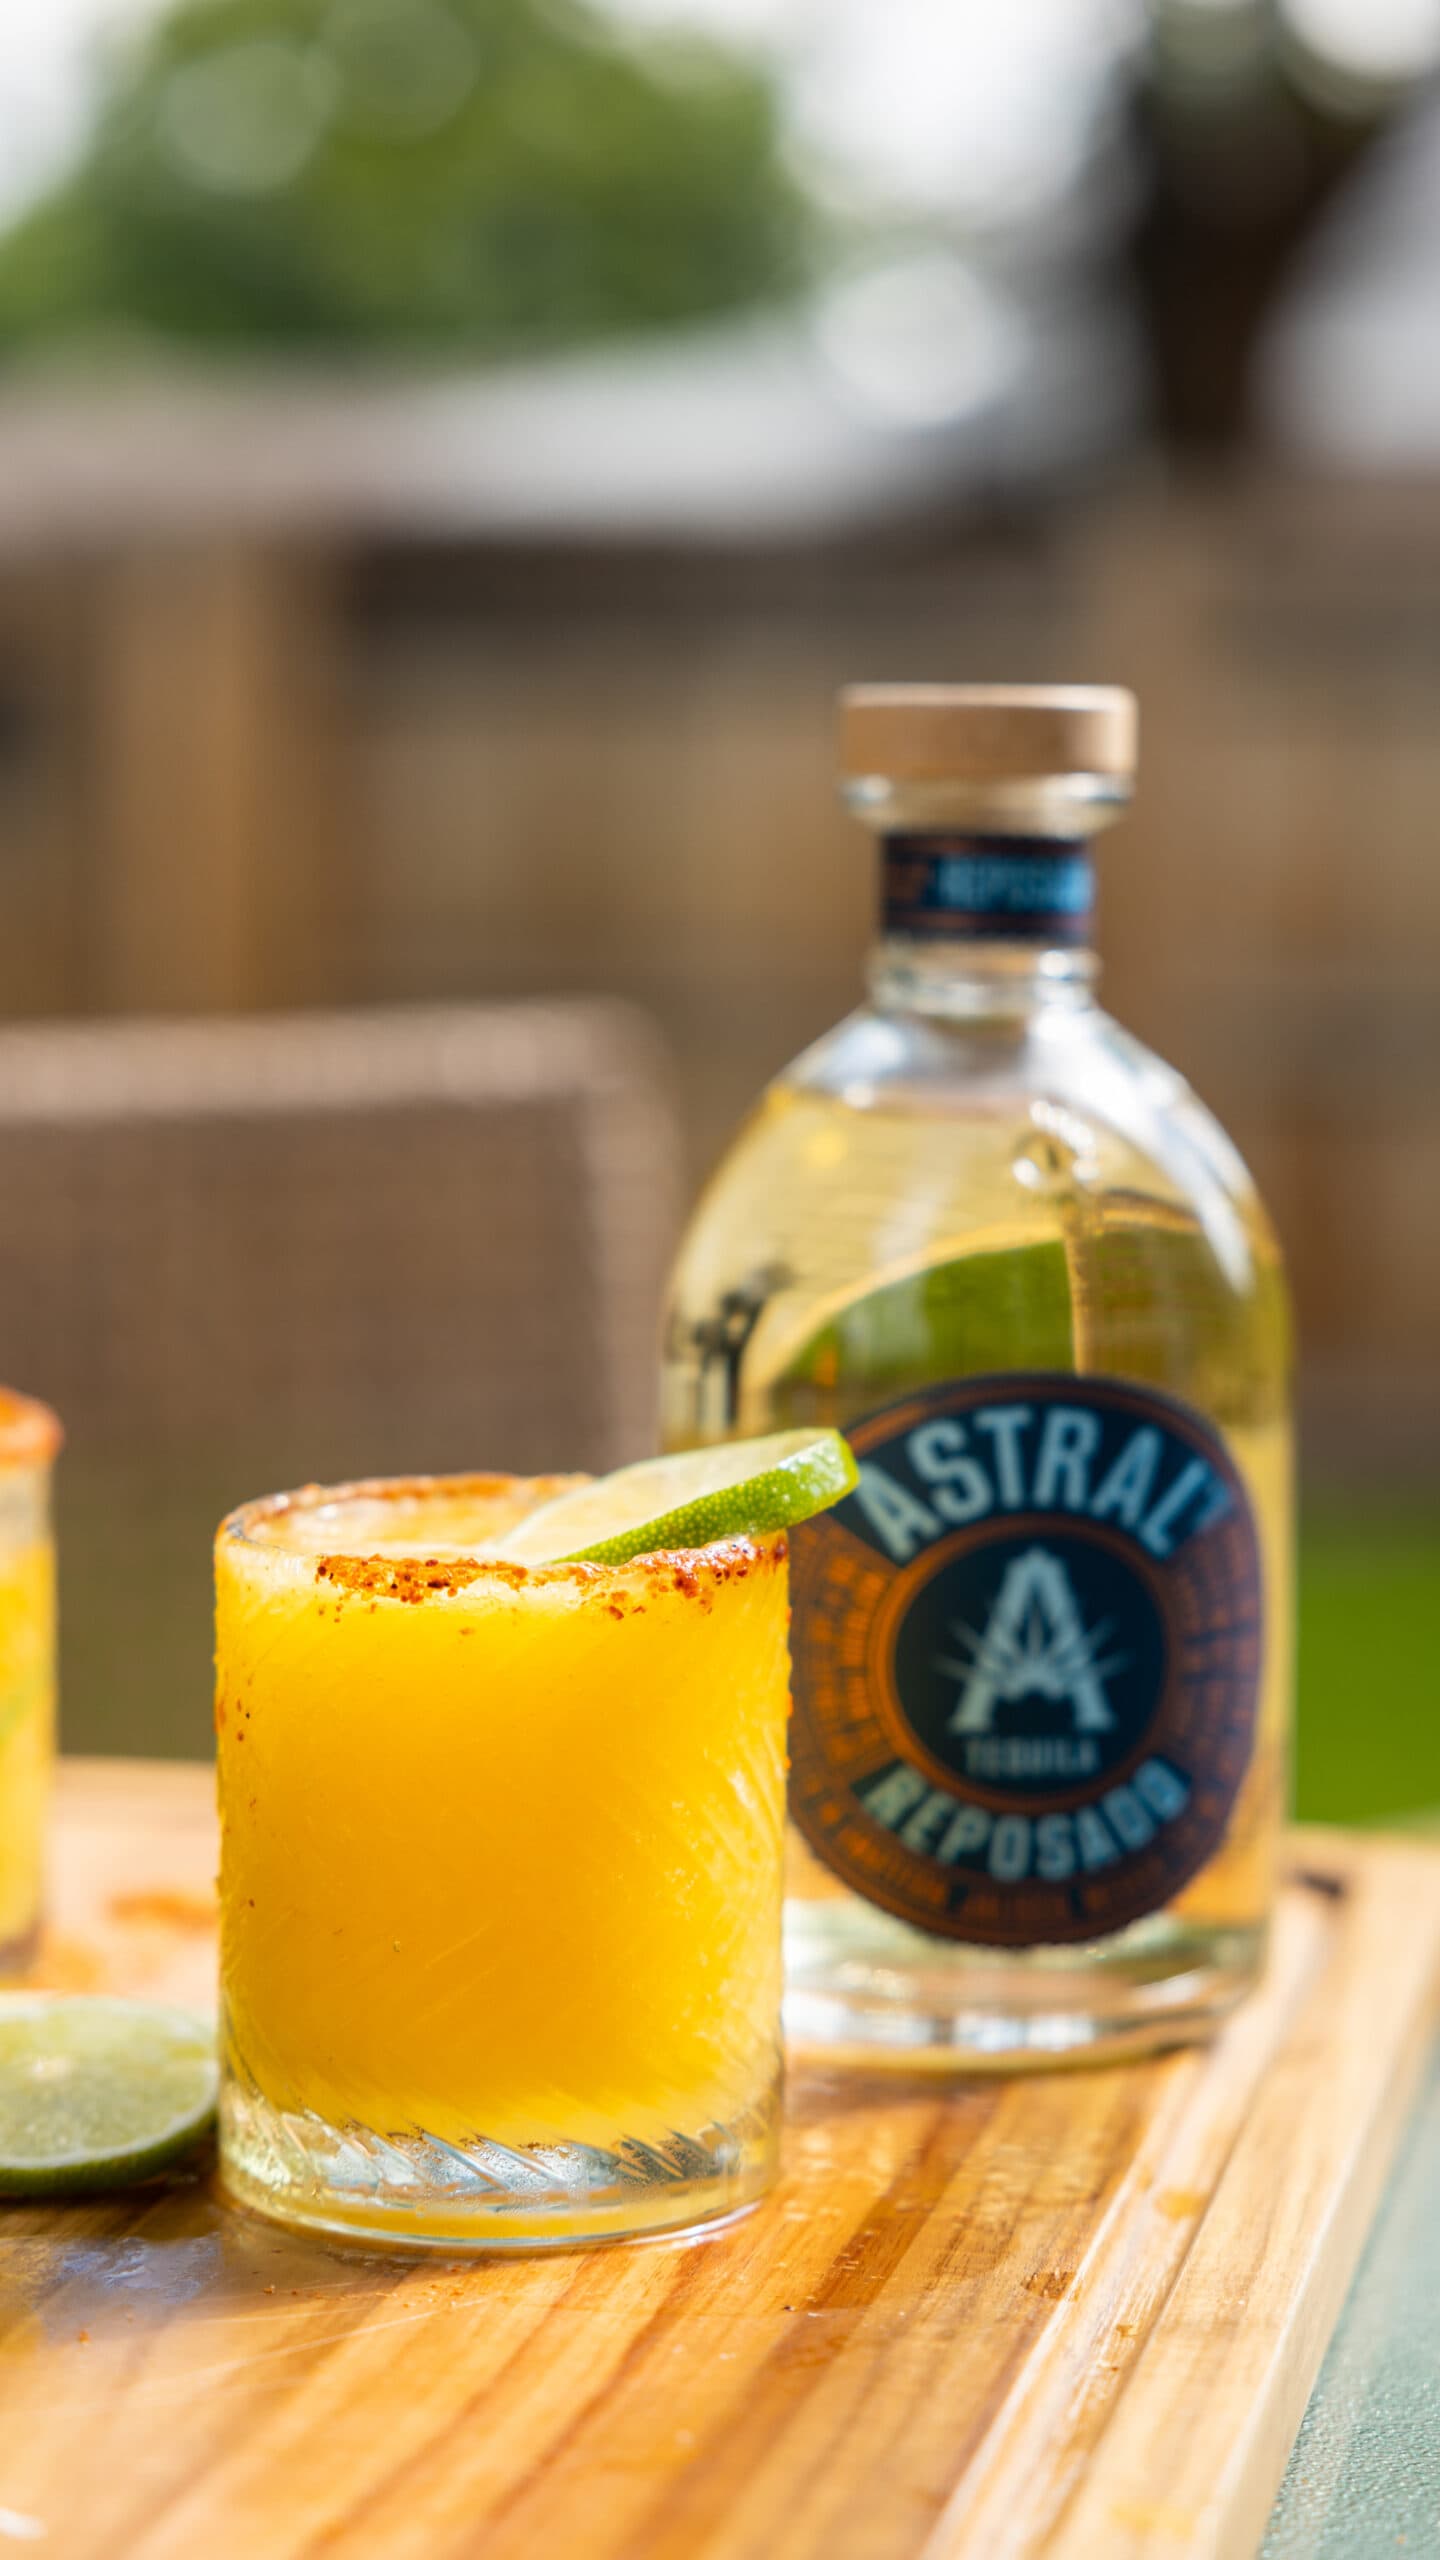 frozen mango margarita next to Astral tequila bottle